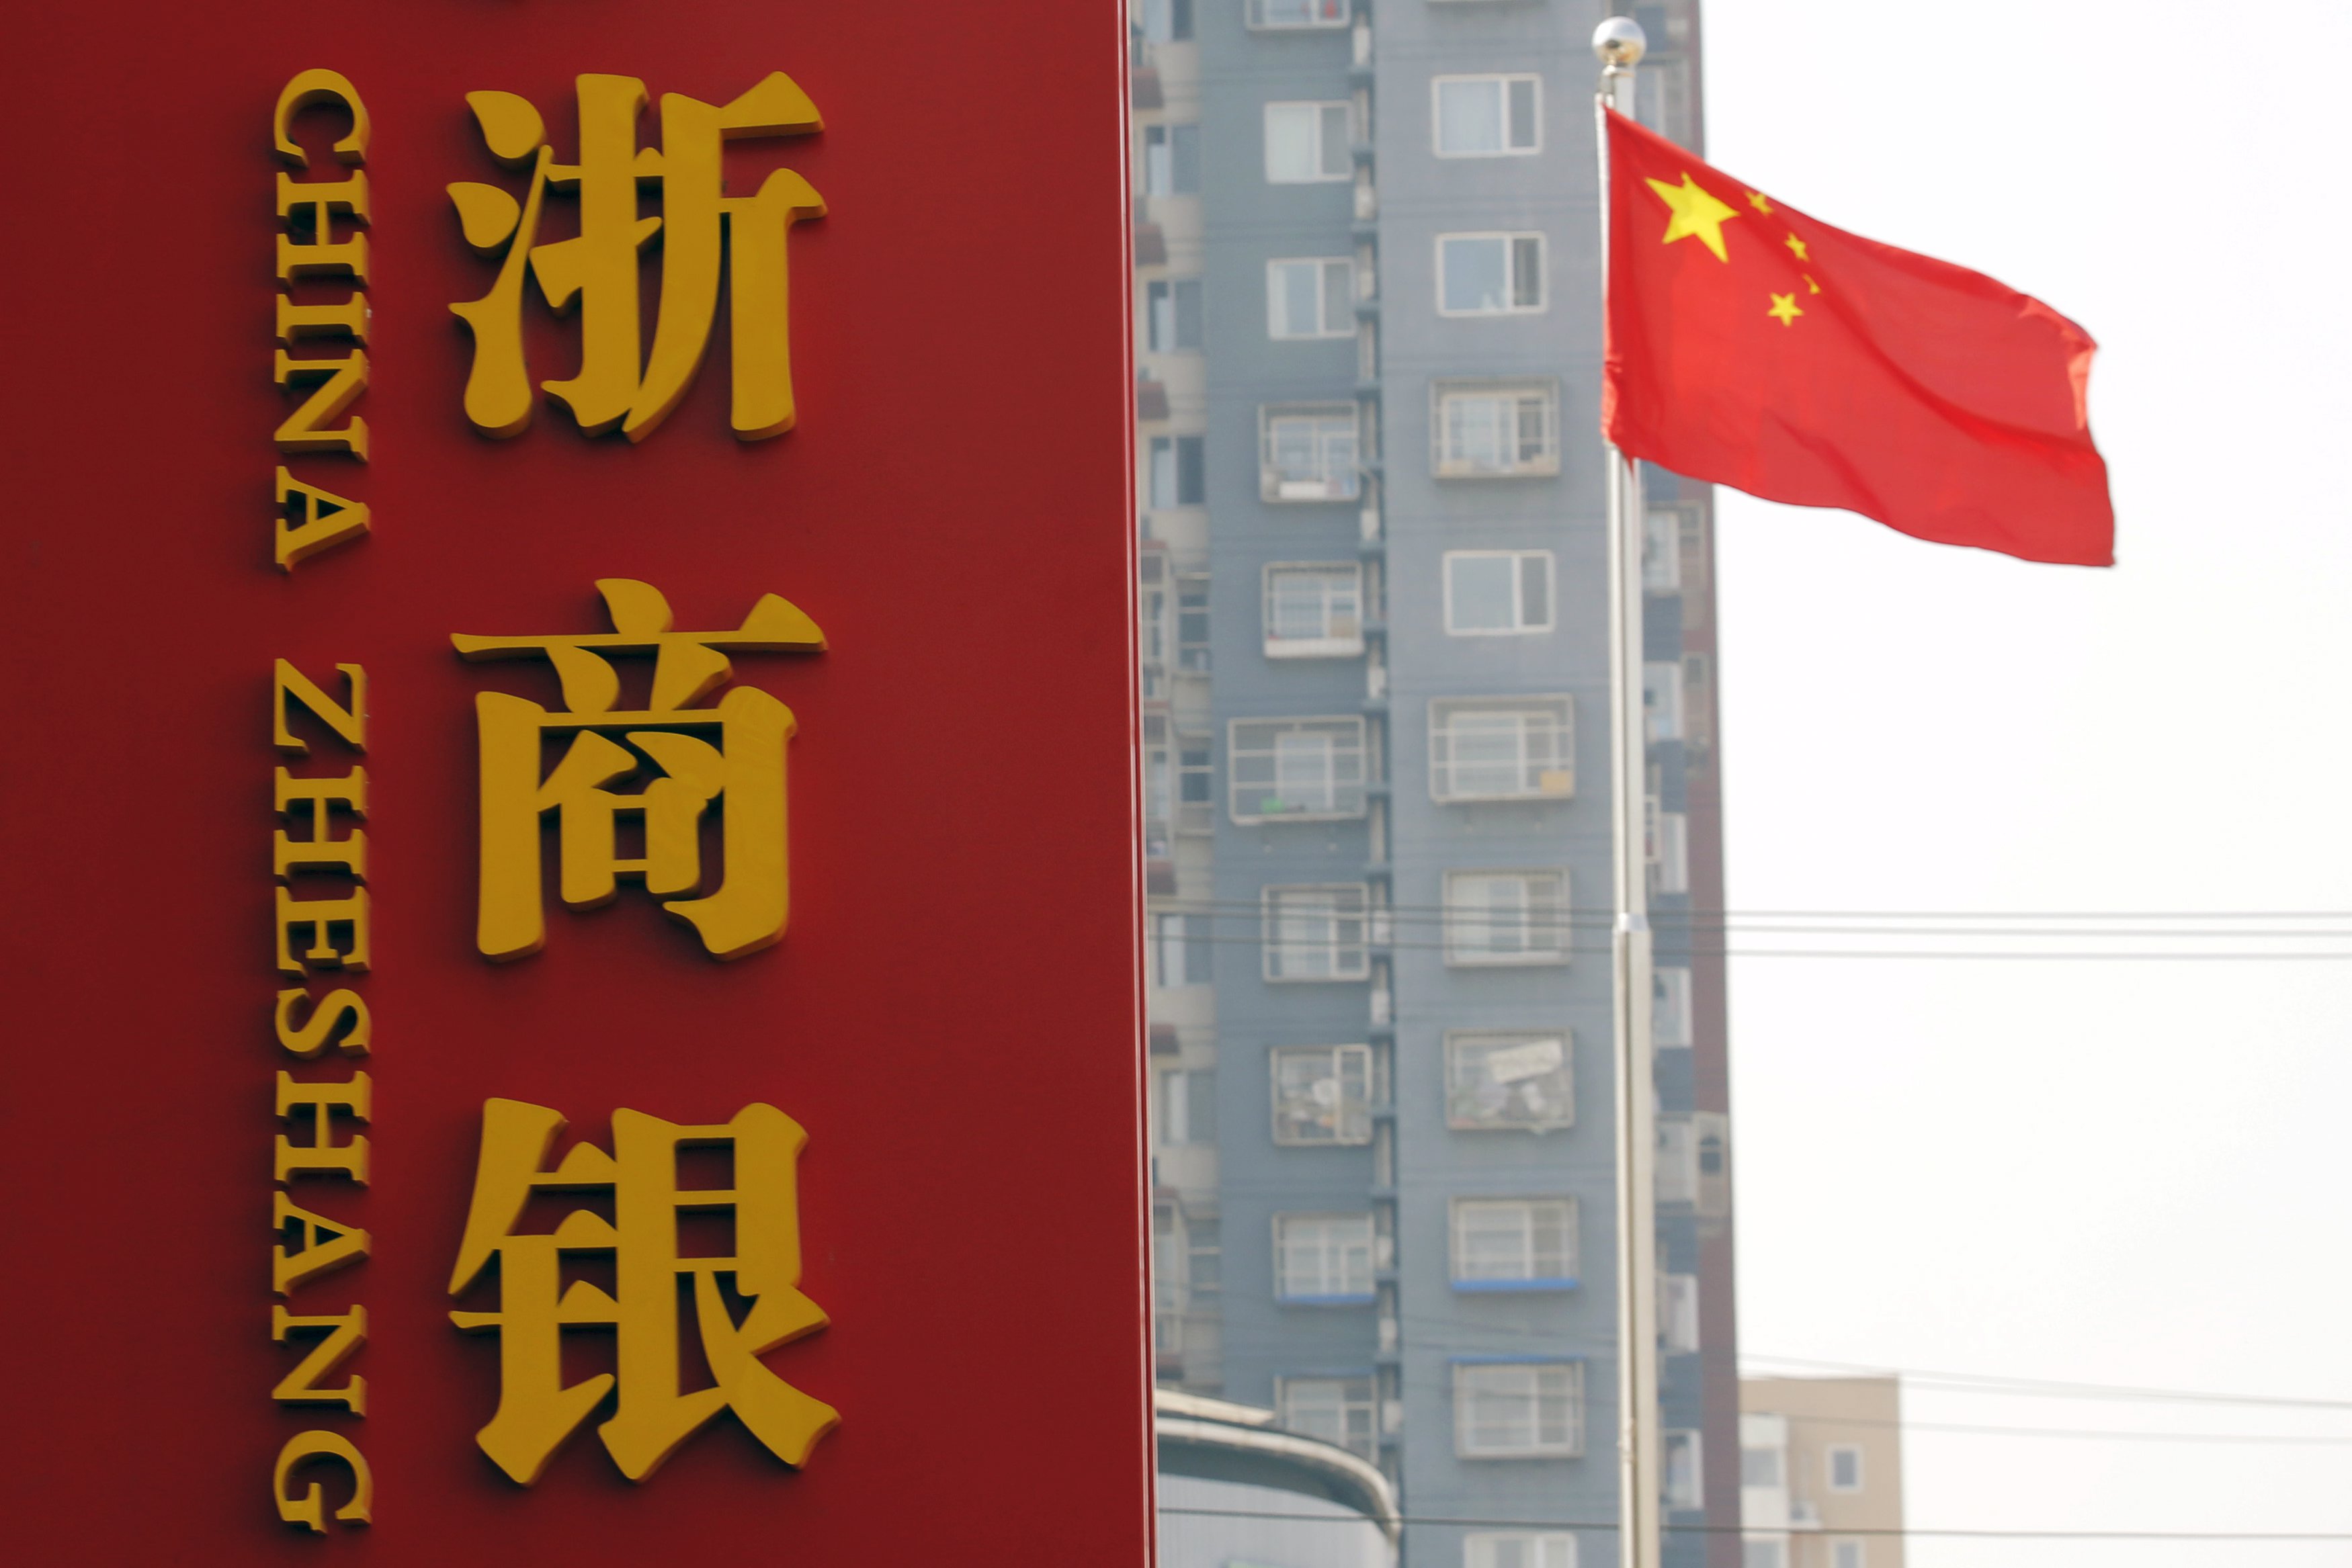 الصين تعتزم حظر تسمية الطرق والمباني بأسماء أجنبيّة